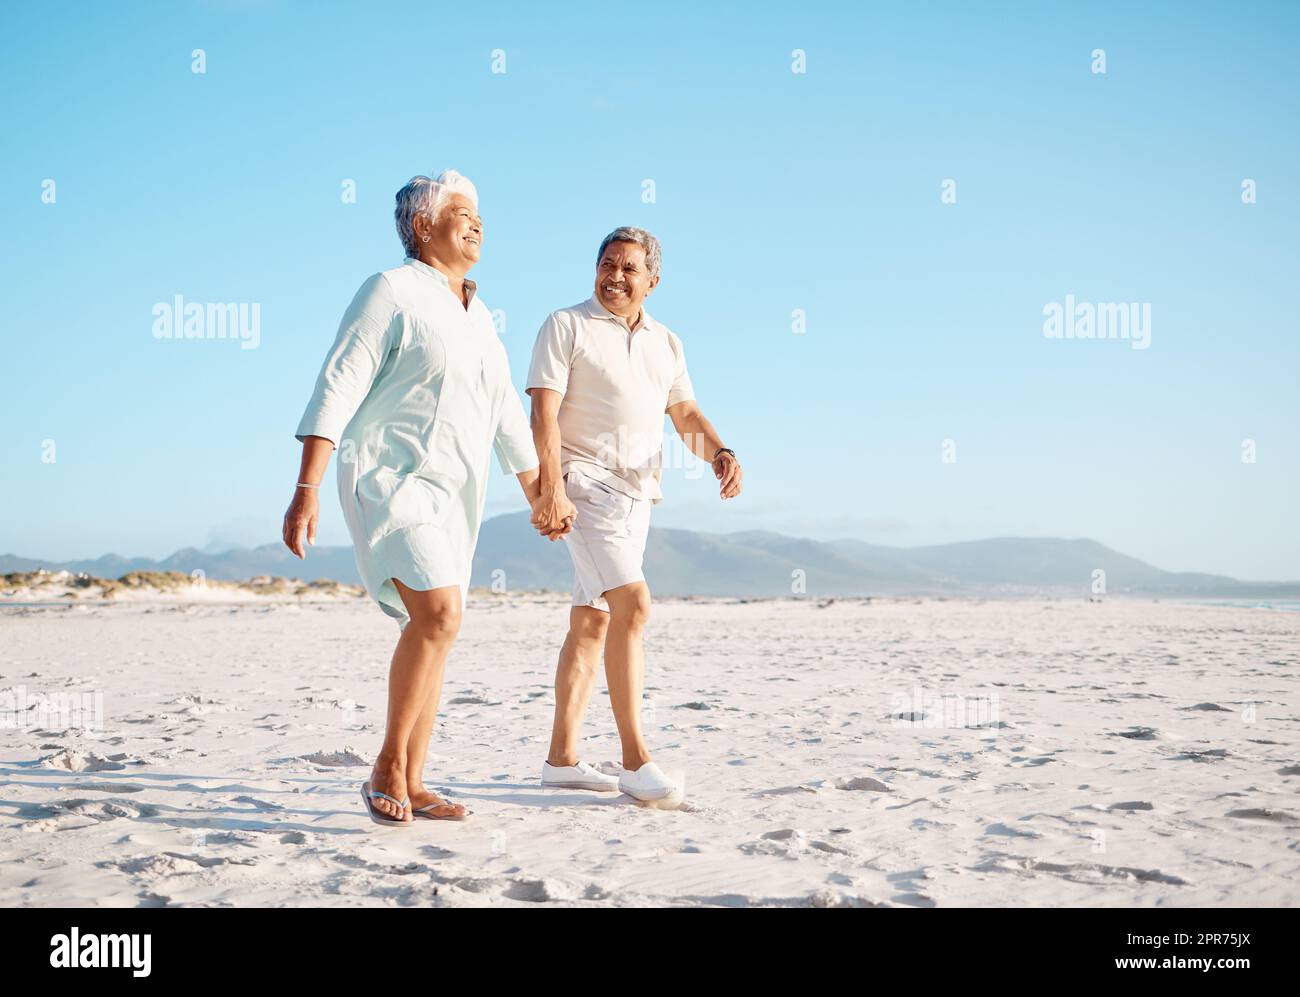 Godendo il nostro tempo libero insieme. Scatto di una coppia matura che passa il tempo insieme in spiaggia. Foto Stock